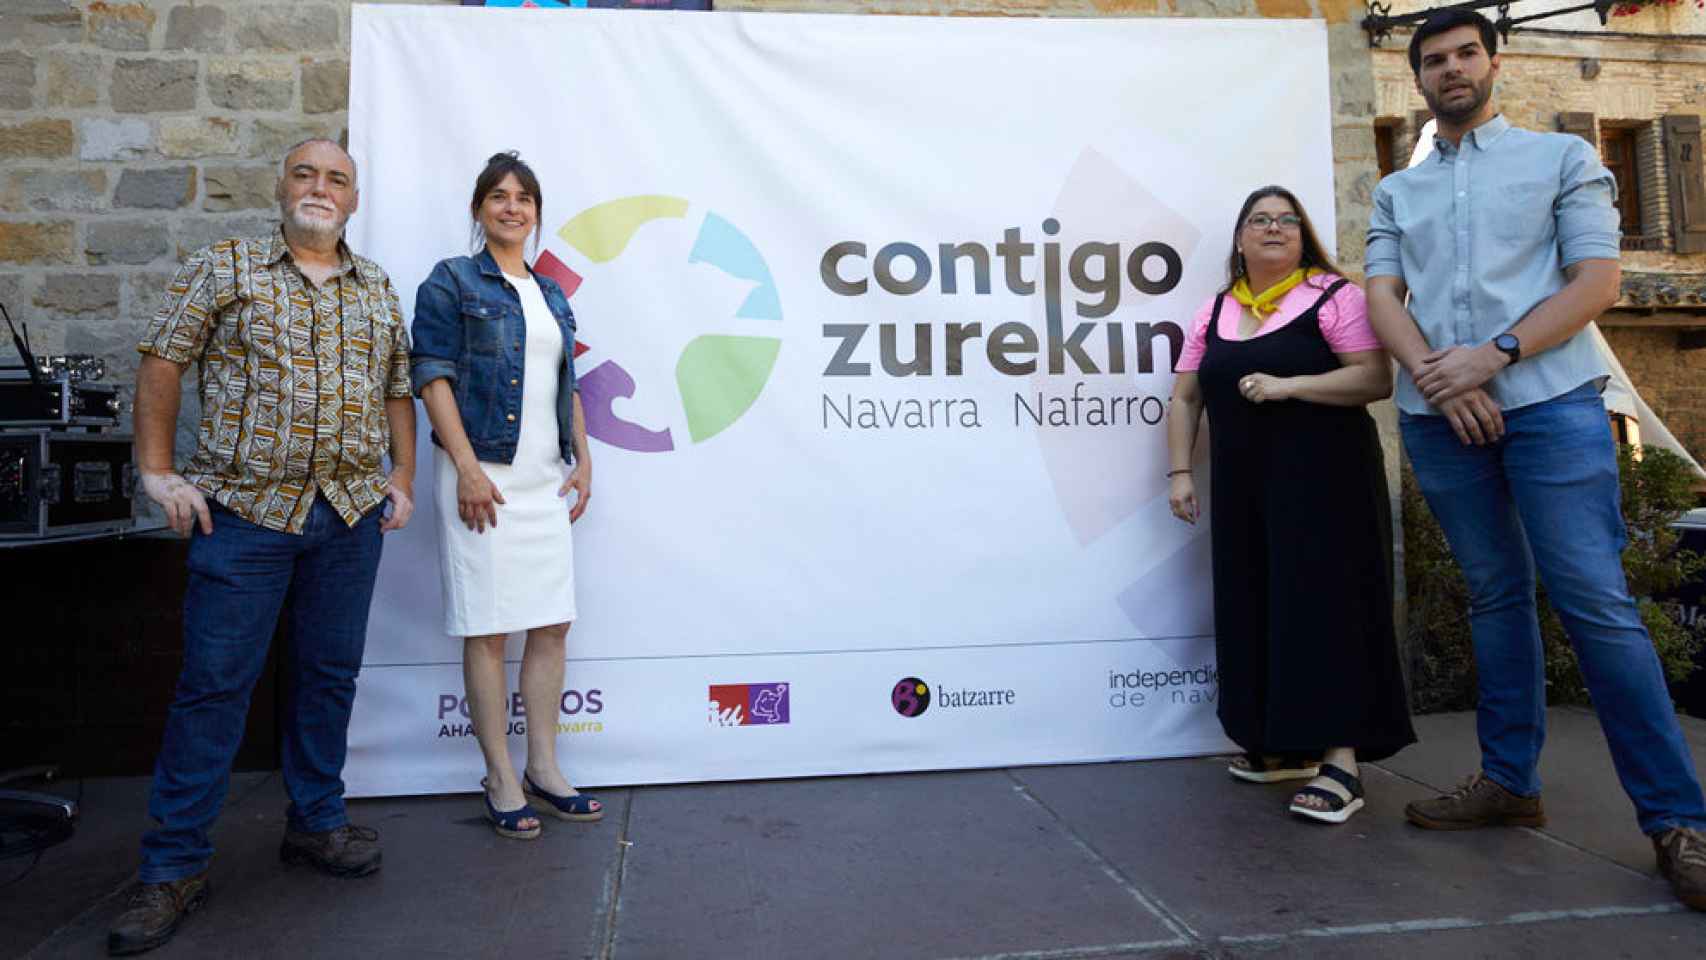 Presentación y firma del acuerdo de Contigo Zurekin, la nueva marca de la confluencia entre Podemos, IU, Batzarre e independientes.